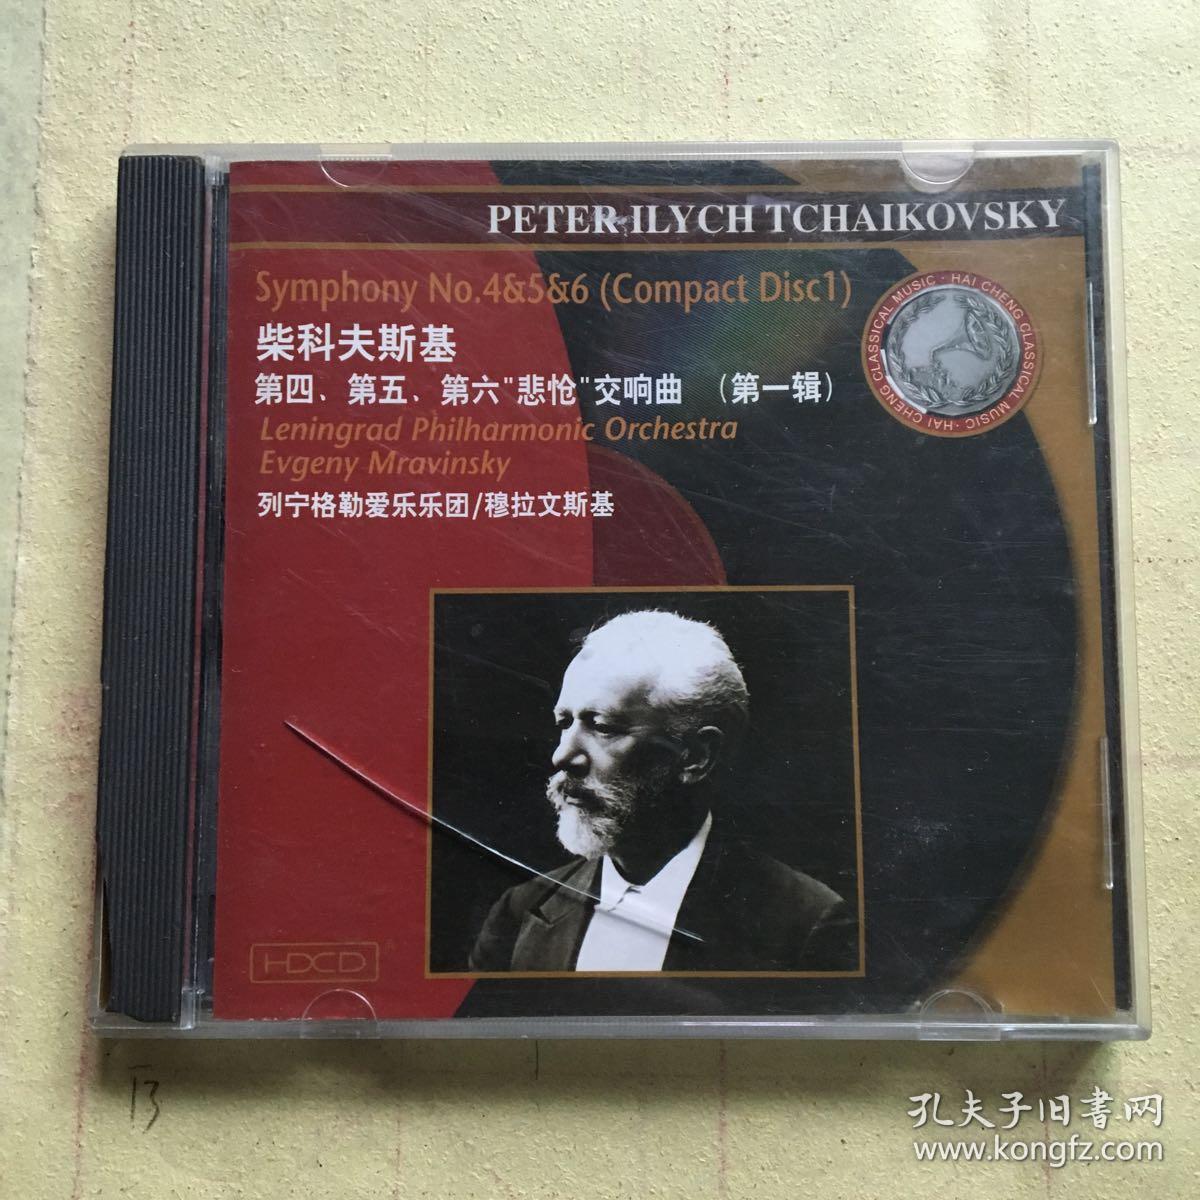 柴科夫斯基 第四第五第六悲怆交响曲 第一辑 列宁格勒爱乐乐团